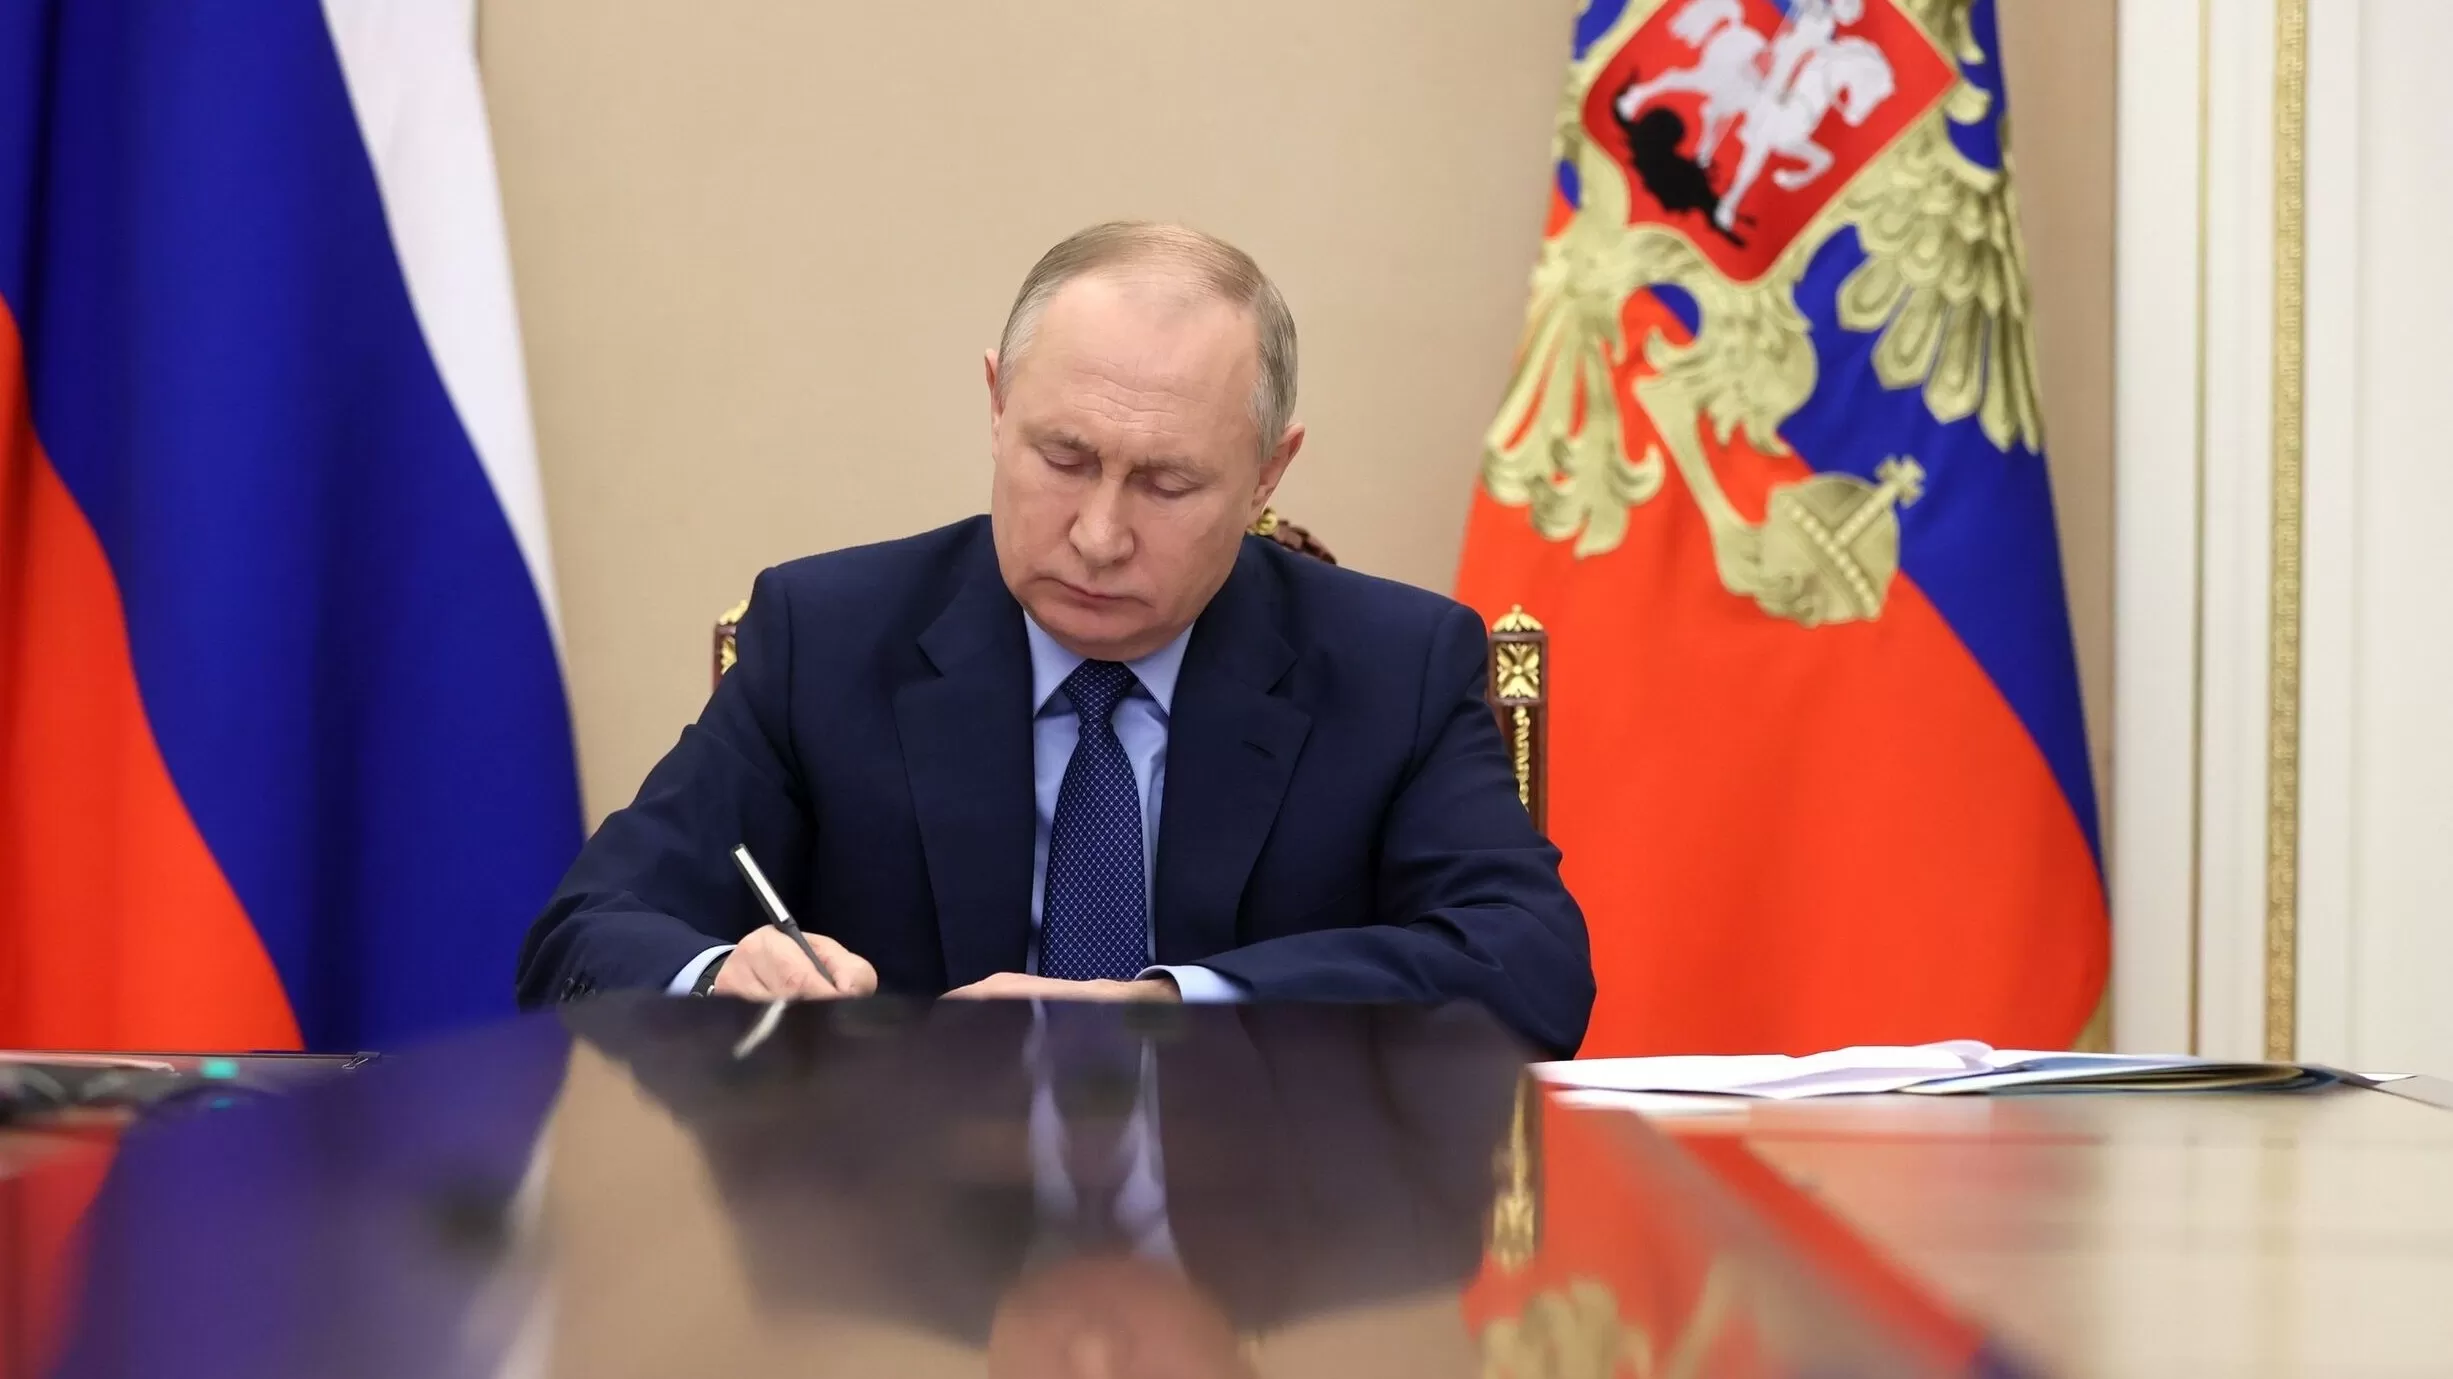 Ռուսաստանը դադարեցրել է Ռազմավարական հարձակողական սպառազինությունների կրճատման պայմանագրին անդամակցությունը